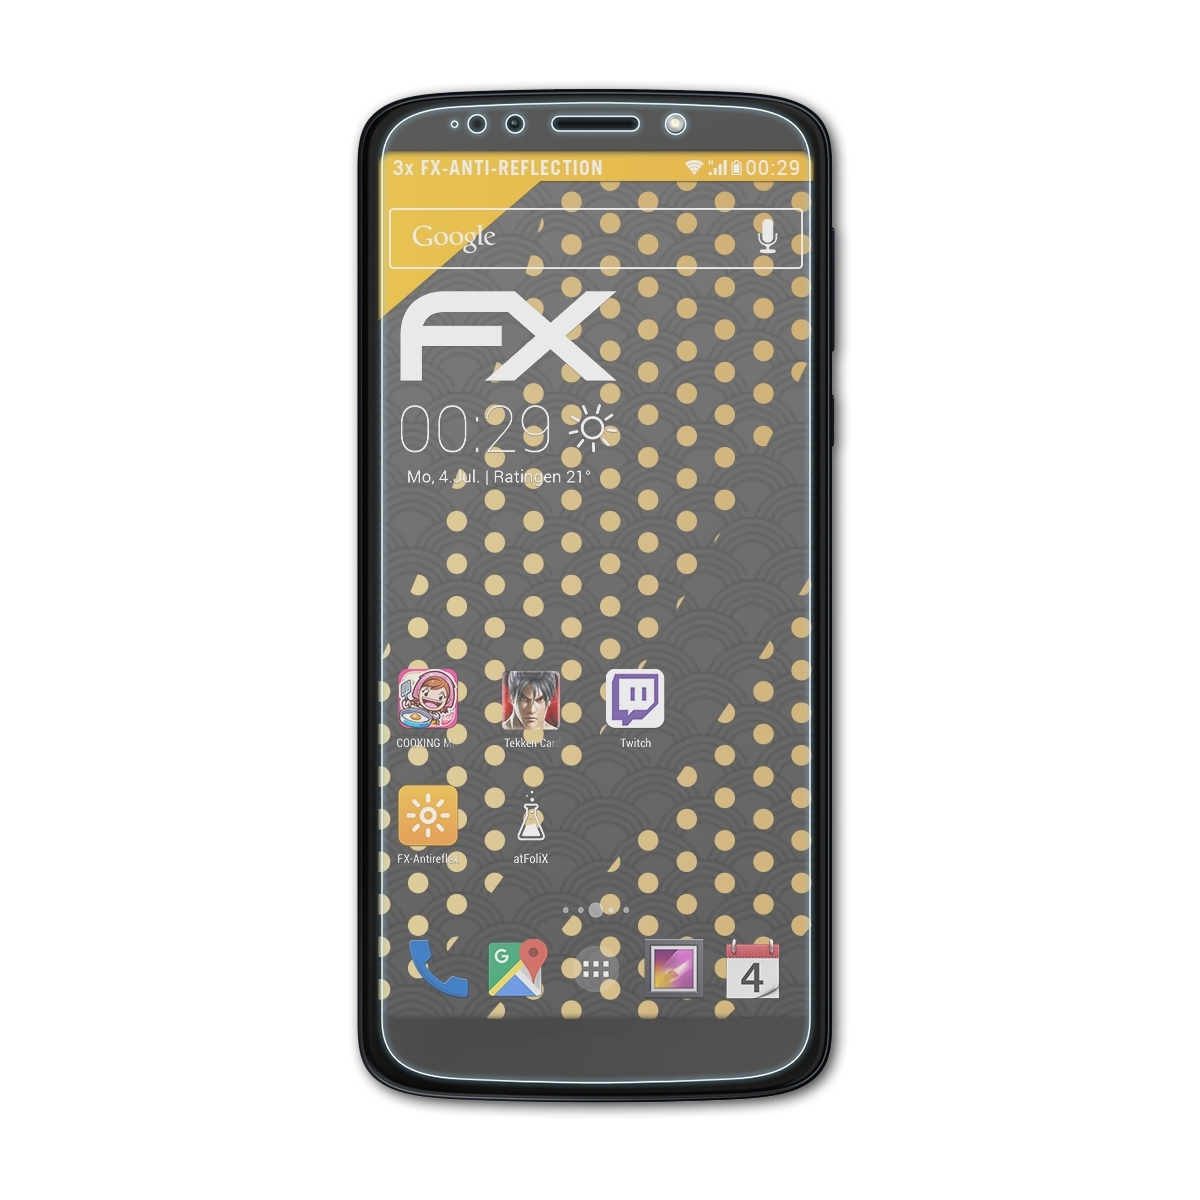 Moto ATFOLIX FX-Antireflex G6 Motorola Play) Lenovo 3x Displayschutz(für